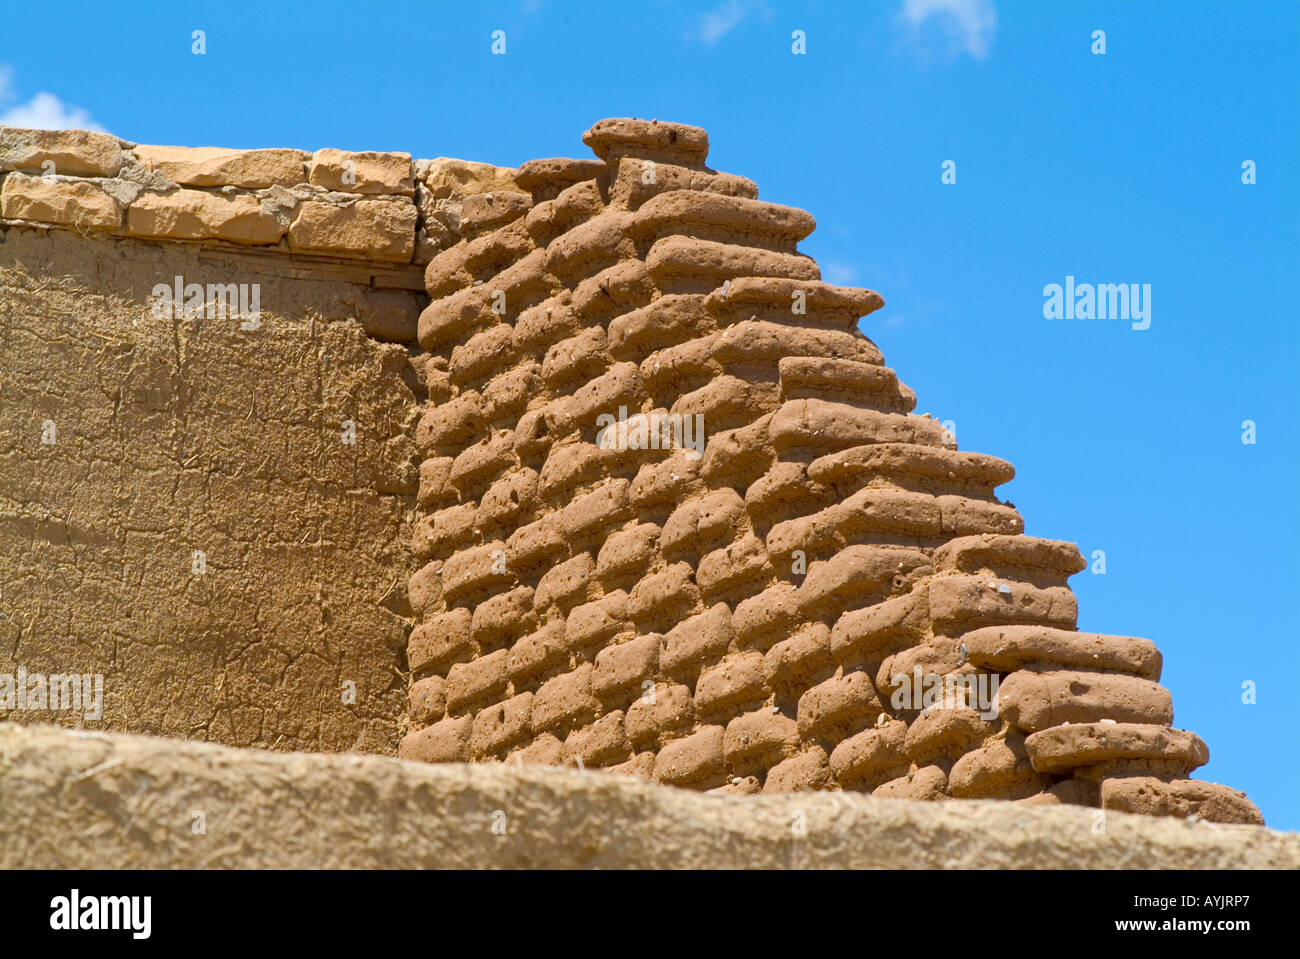 Adobe wall construction Stock Photo